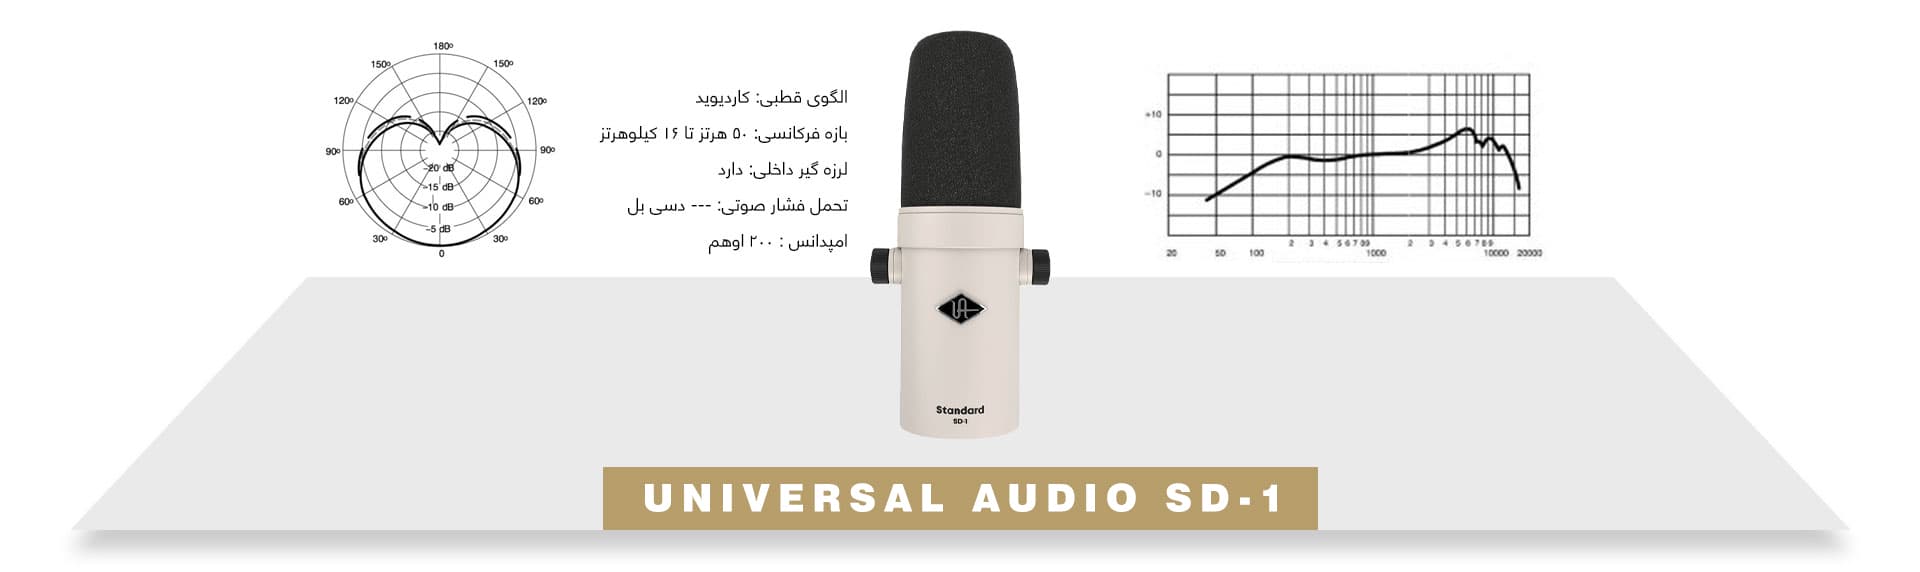 میکروفون داینامیک پادکست برادکست Universal Audio SD-1